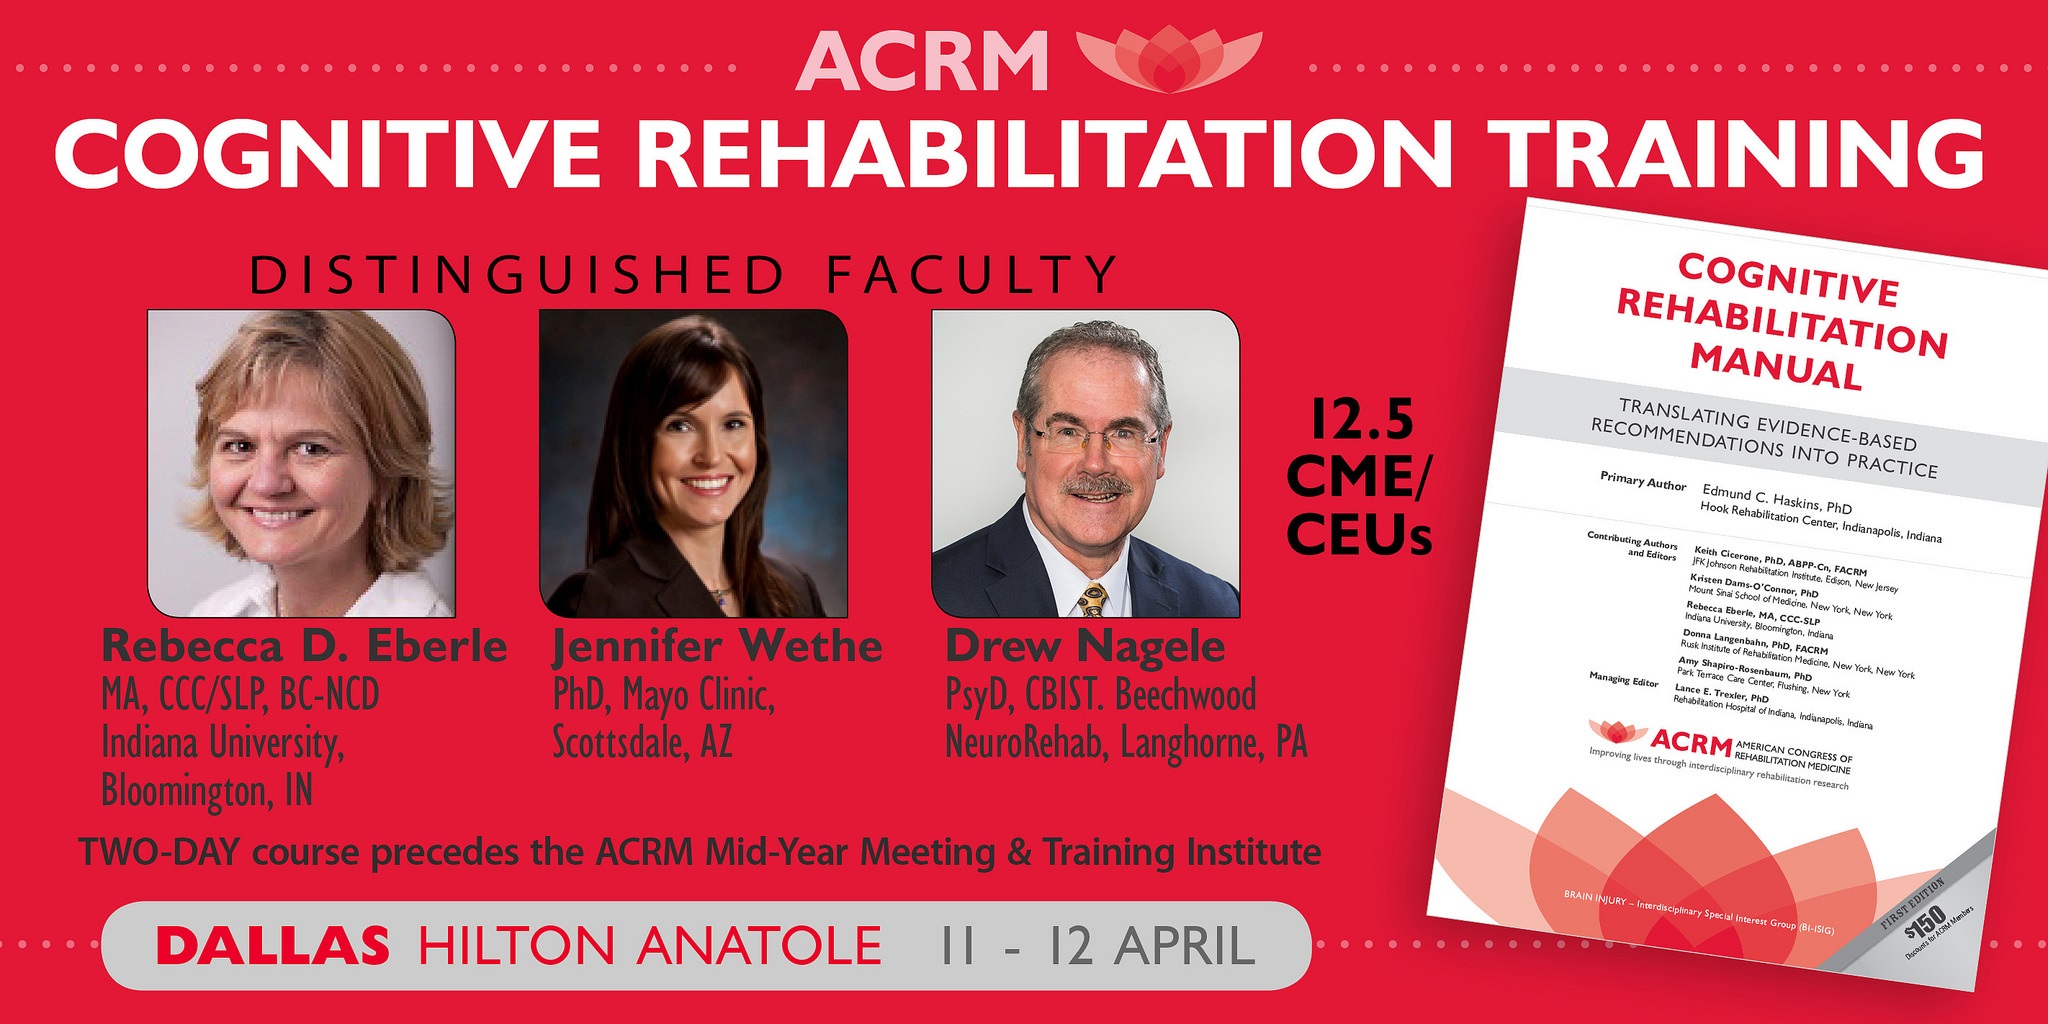 ACRM Cognitive Rehabilitation Training